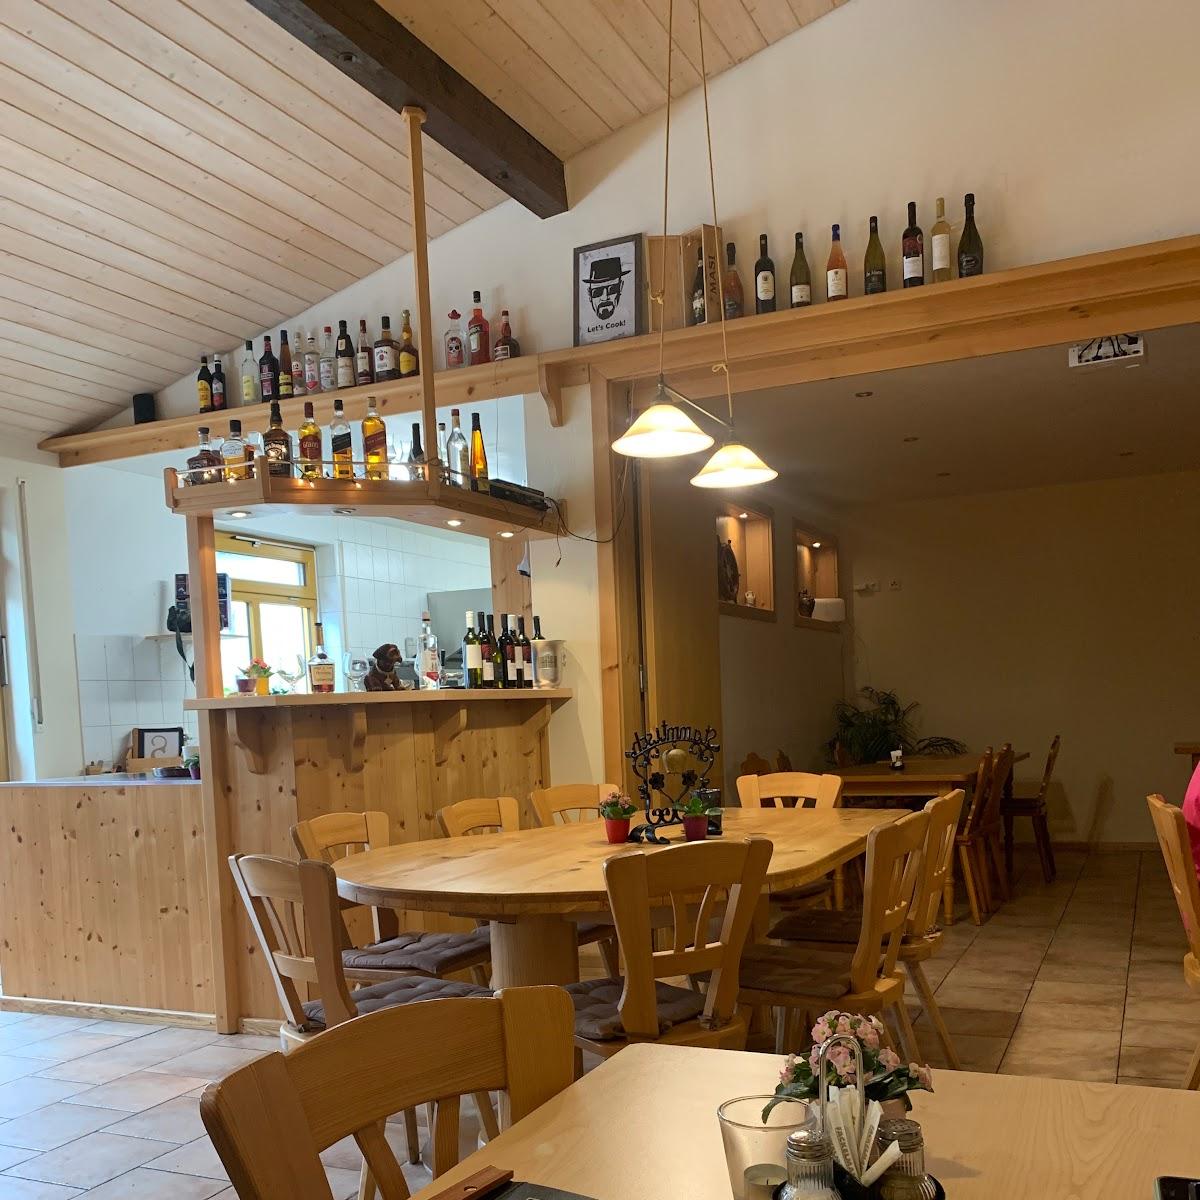 Restaurant "KriKri Restaurant - griechischen und kroatischen Spezialitäten" in Weilheim in Oberbayern